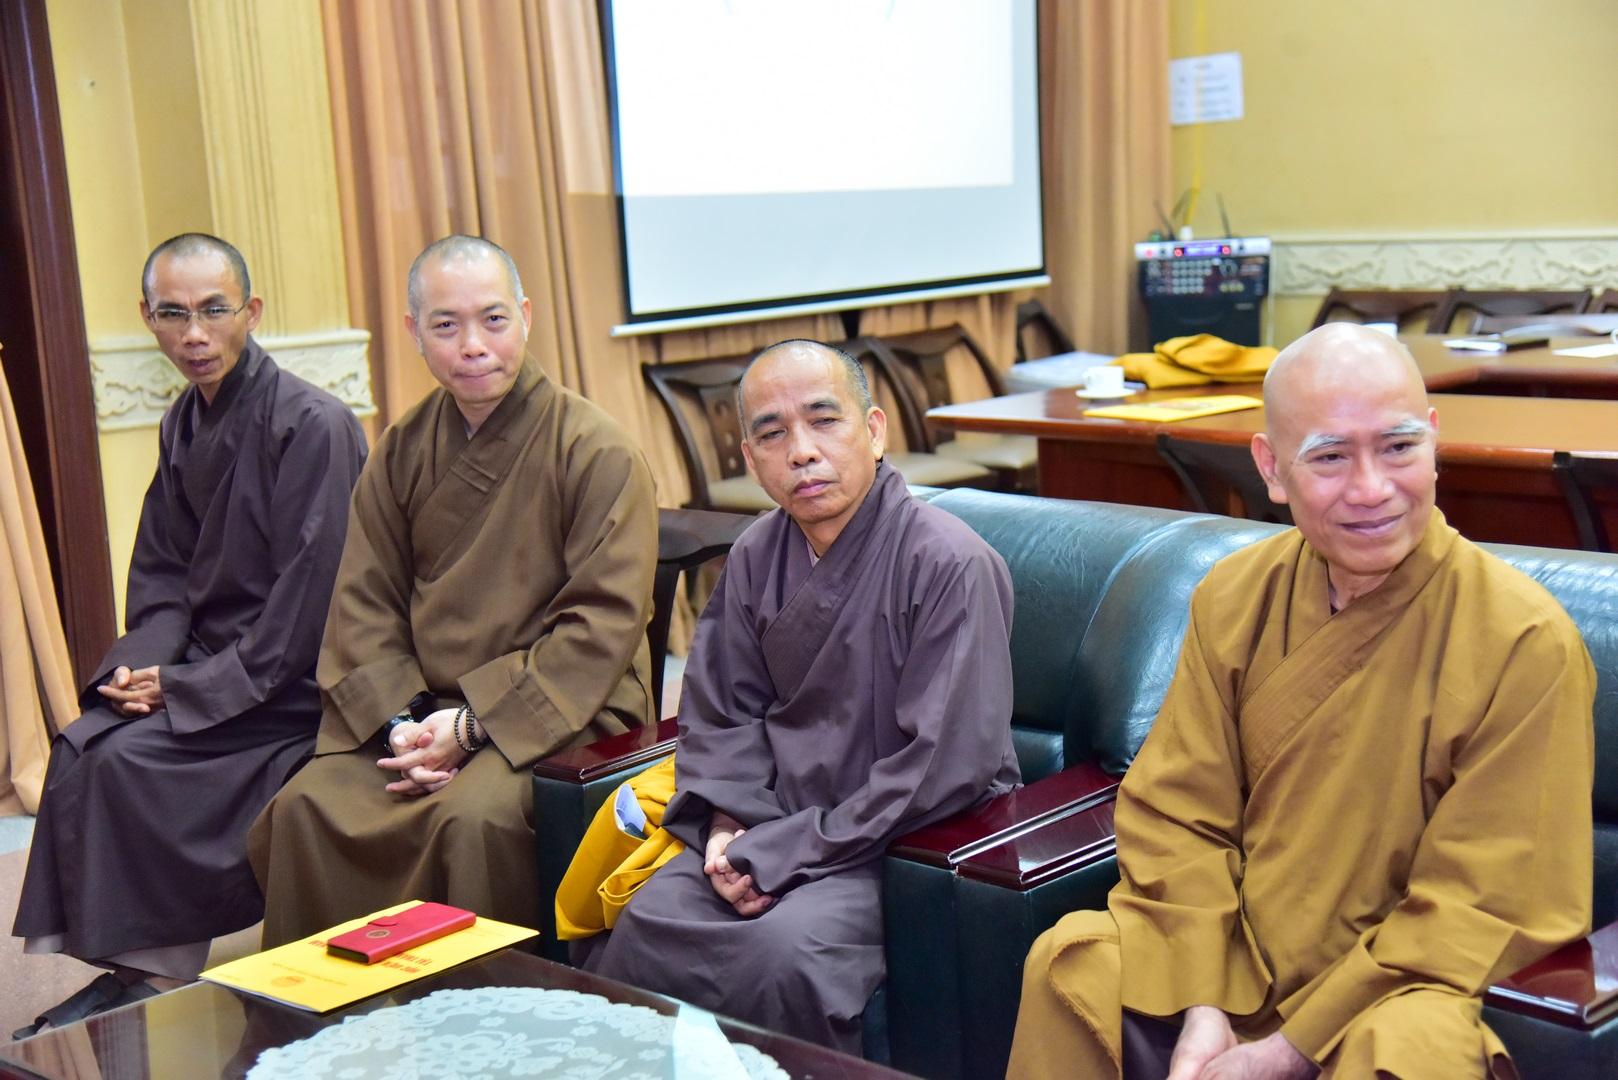  Phòng An ninh nội địa, Công an TP.HCM đã đến thăm, chúc mừng Phật đản Hội đồng Điều hành Học viện PGVN tại TP.HCM